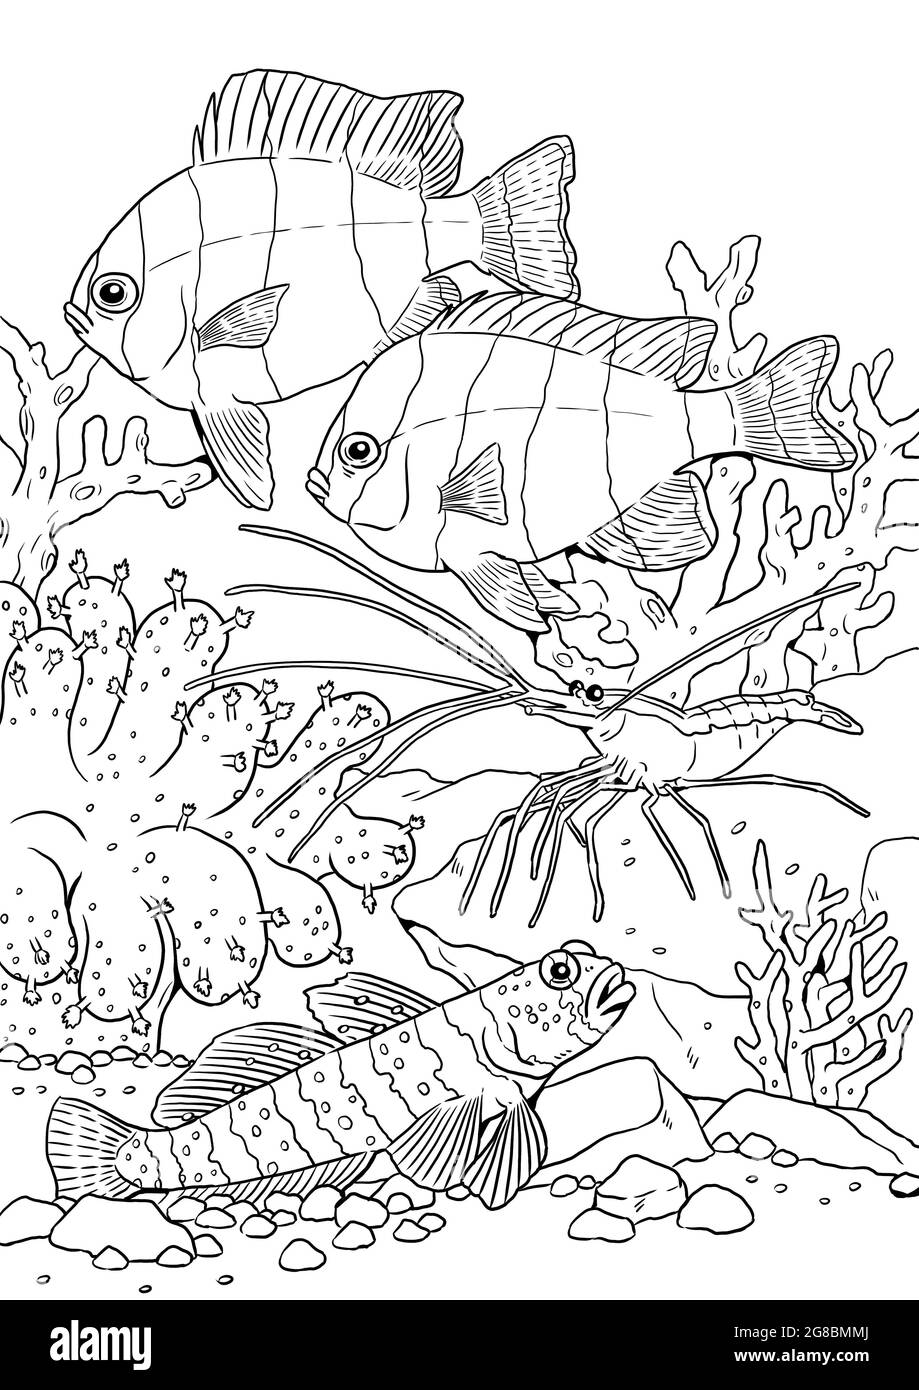 Poissons marins tropicaux avec crevettes. Modèle numérique coloré de poisson de mer. Livre de coloriage pour les enfants et les adultes. Banque D'Images